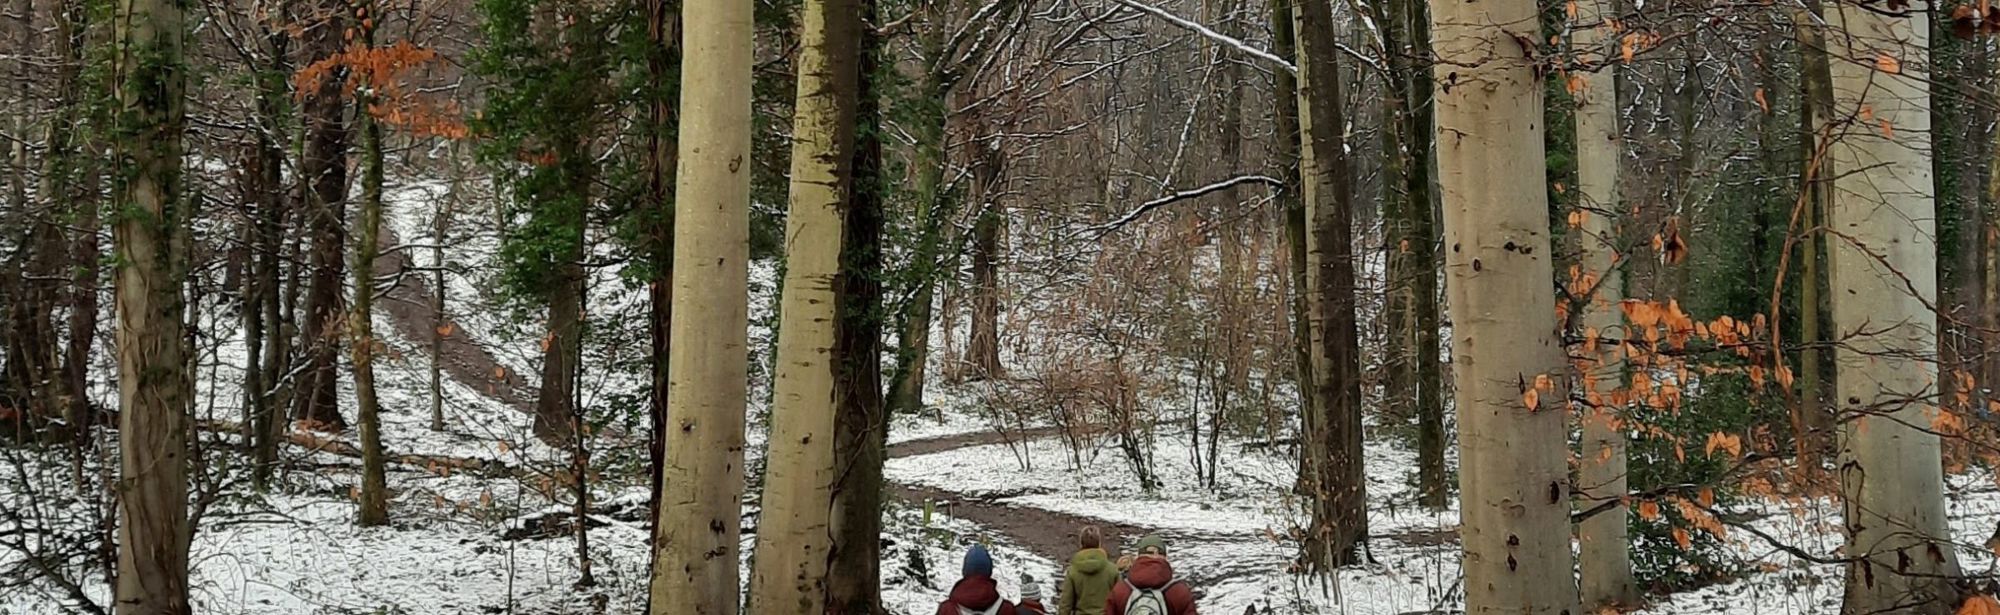 Een winterwandeling in het bos op een pratsjig paadje